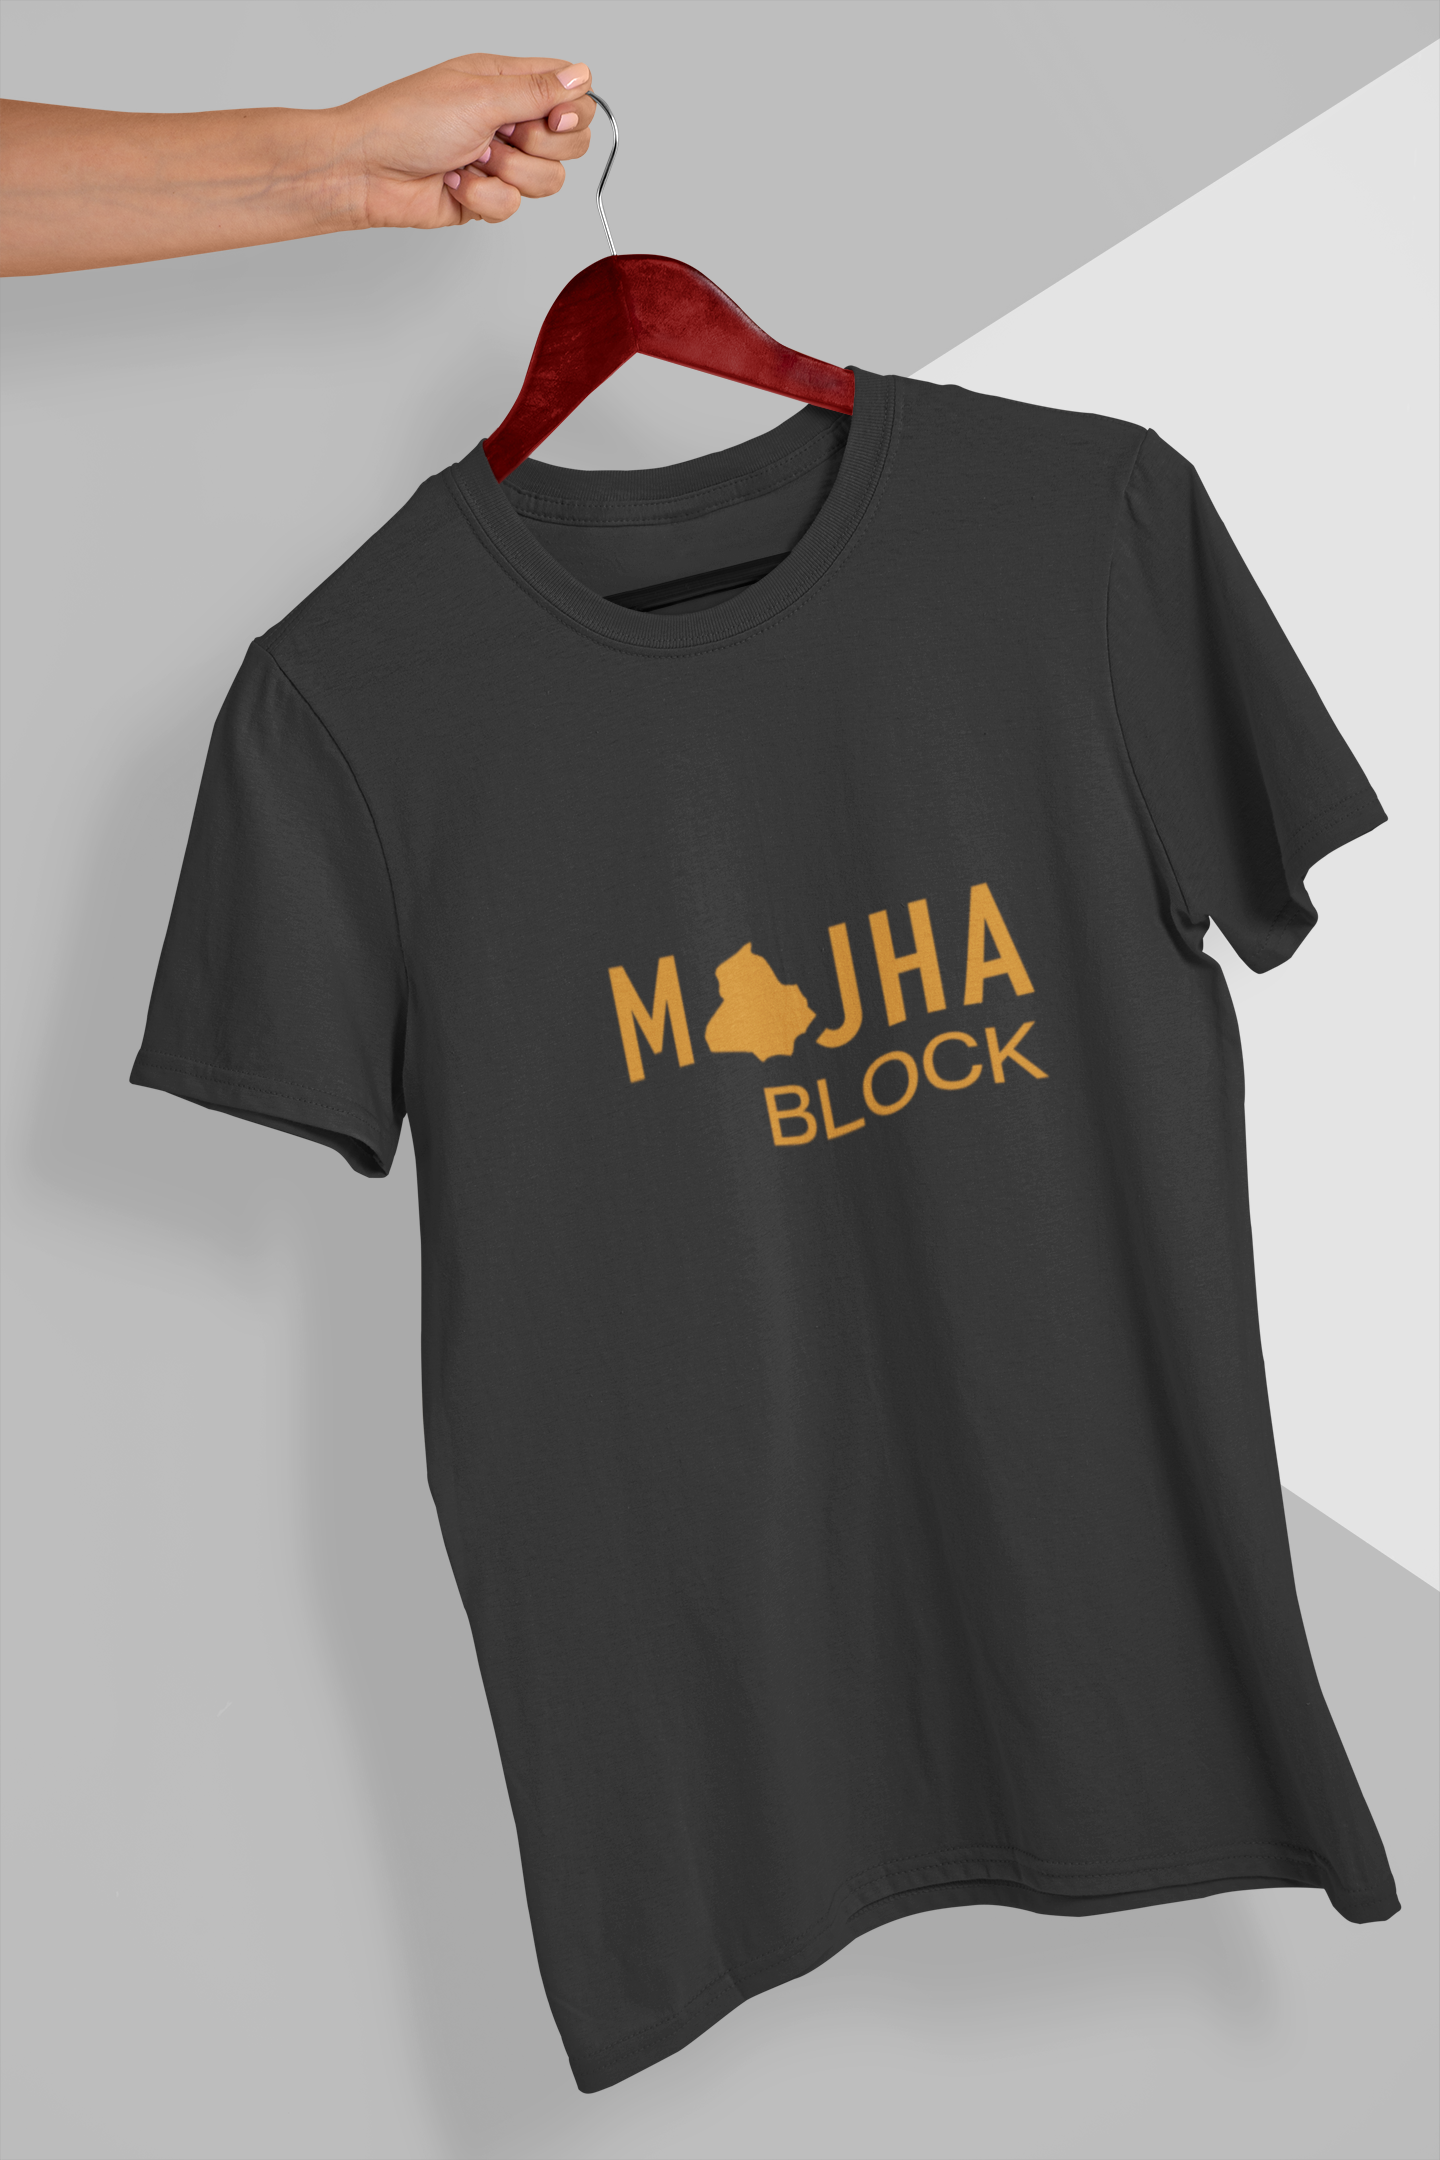 MAJHA BLOCK T-shirt